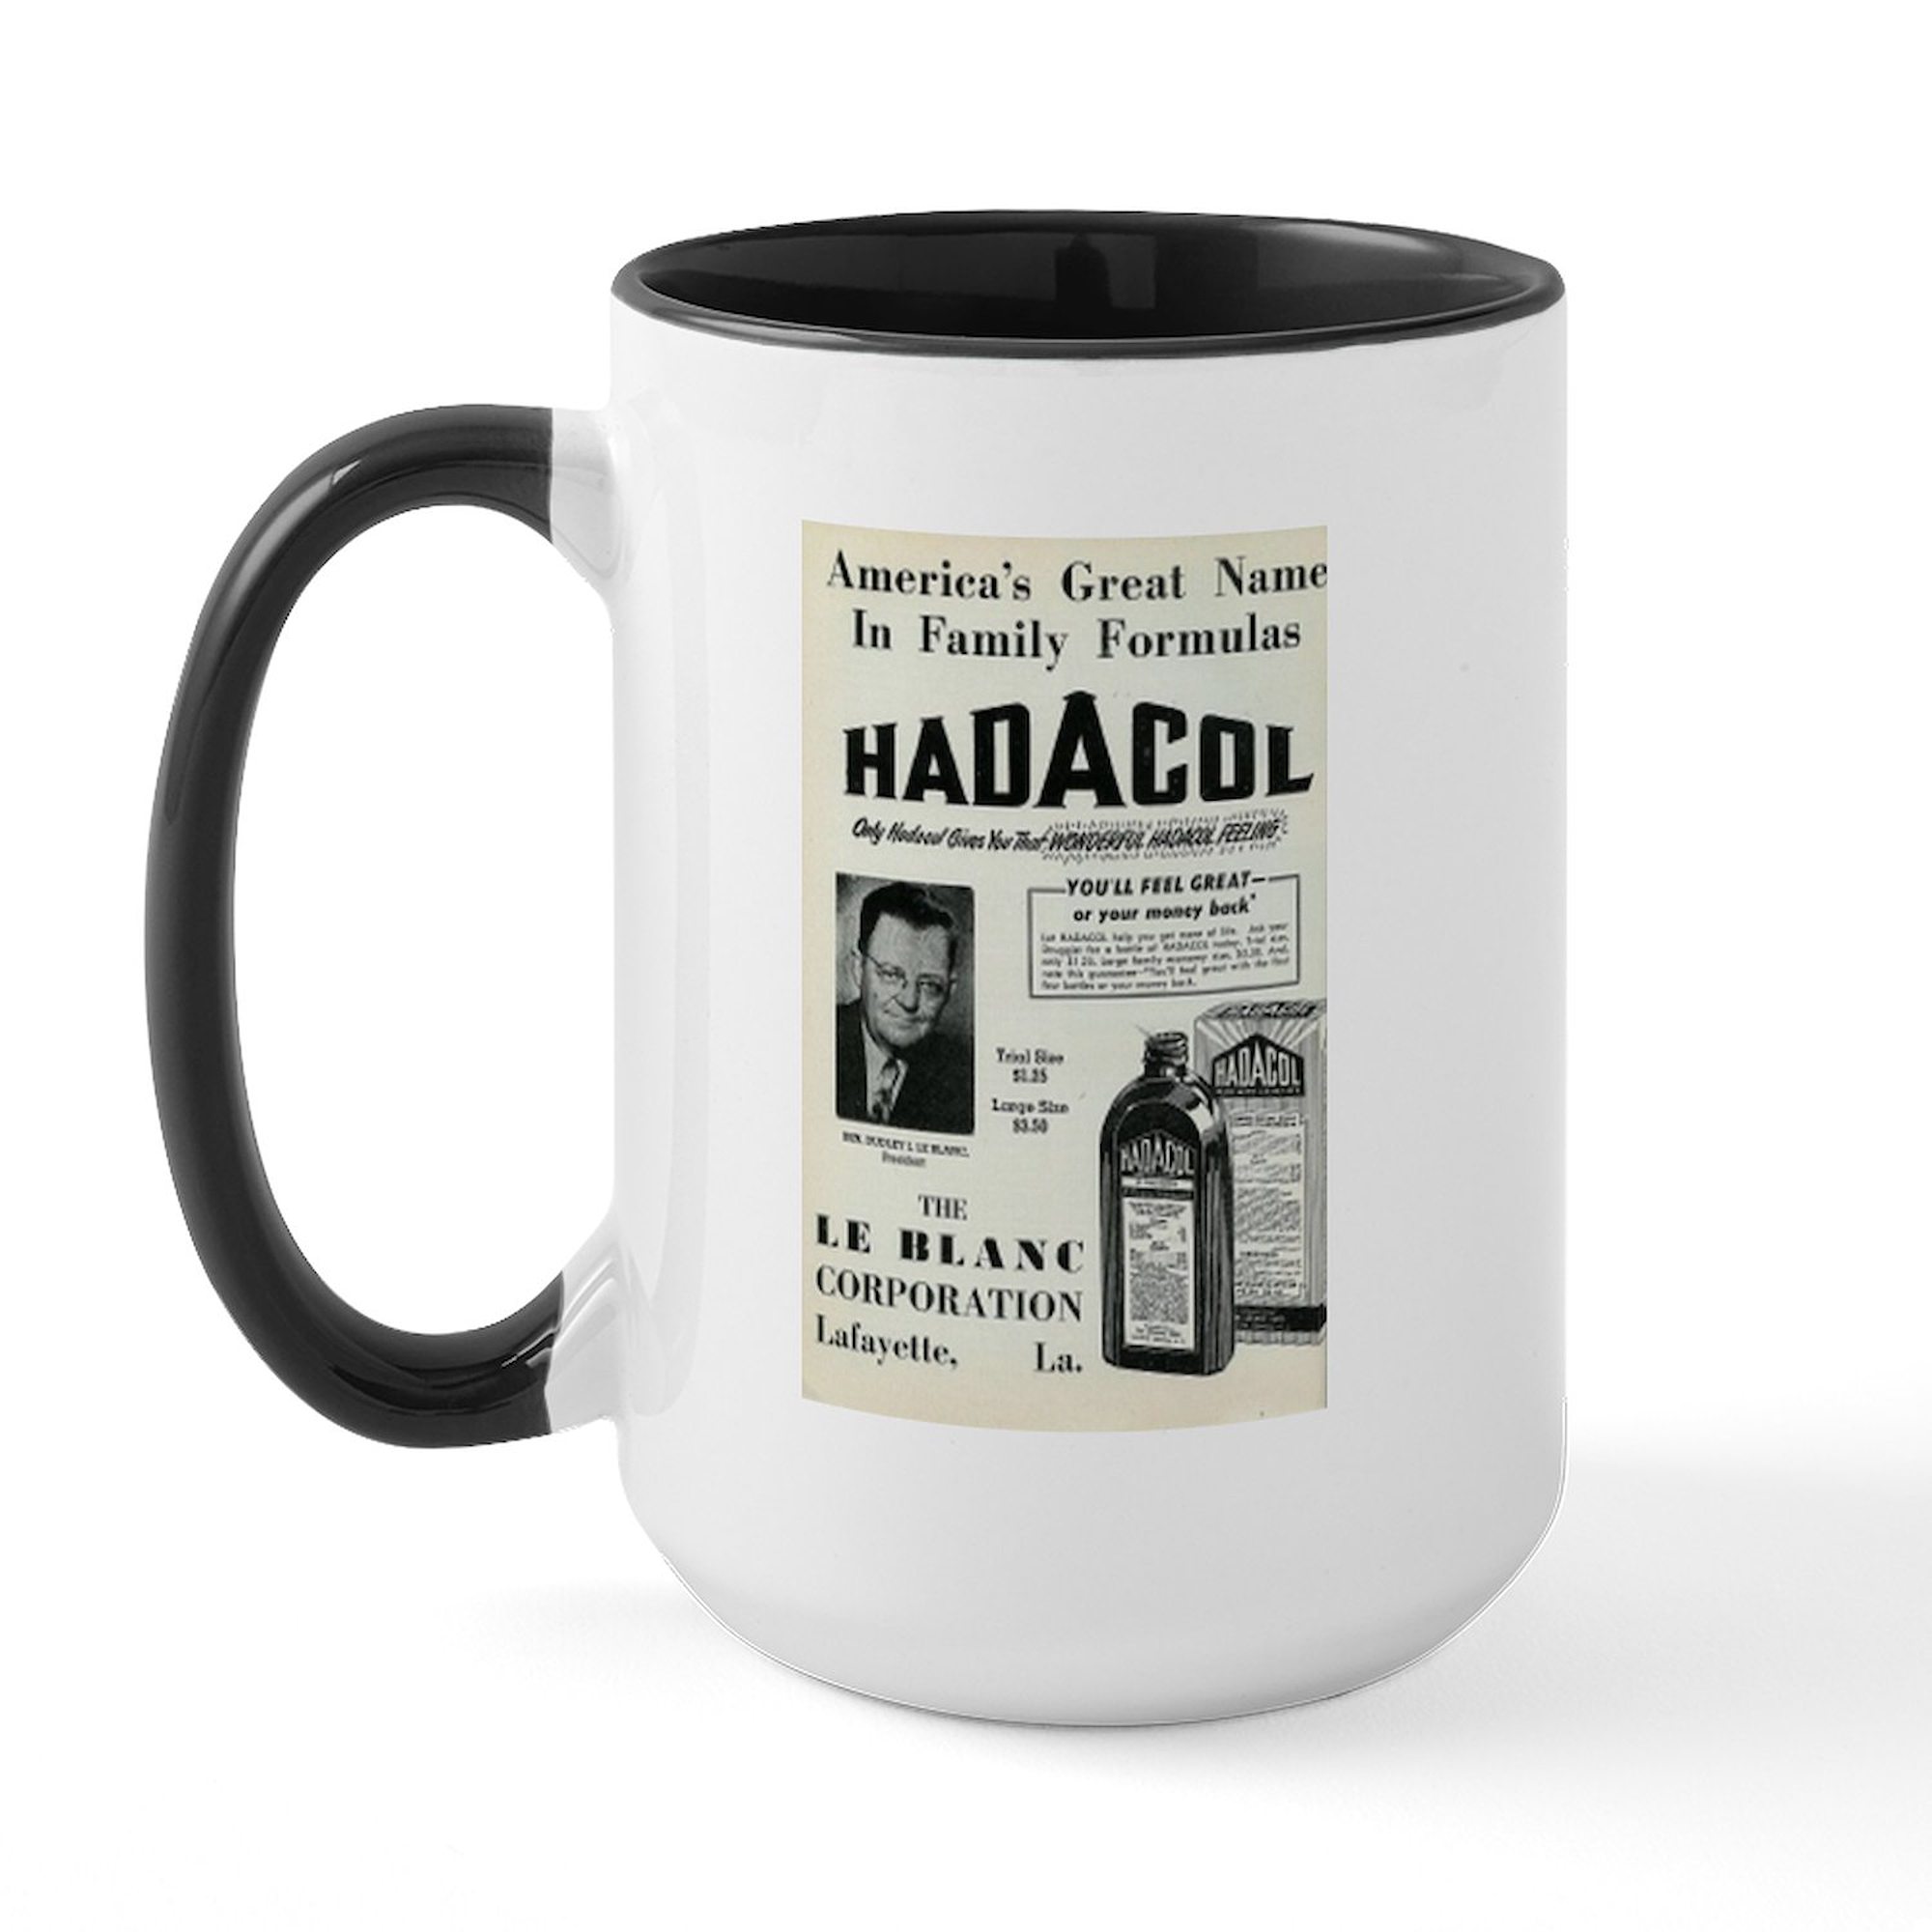 CafePress - Hadacol Large Mug - 15 oz Ceramic Large Mug - image 1 of 2